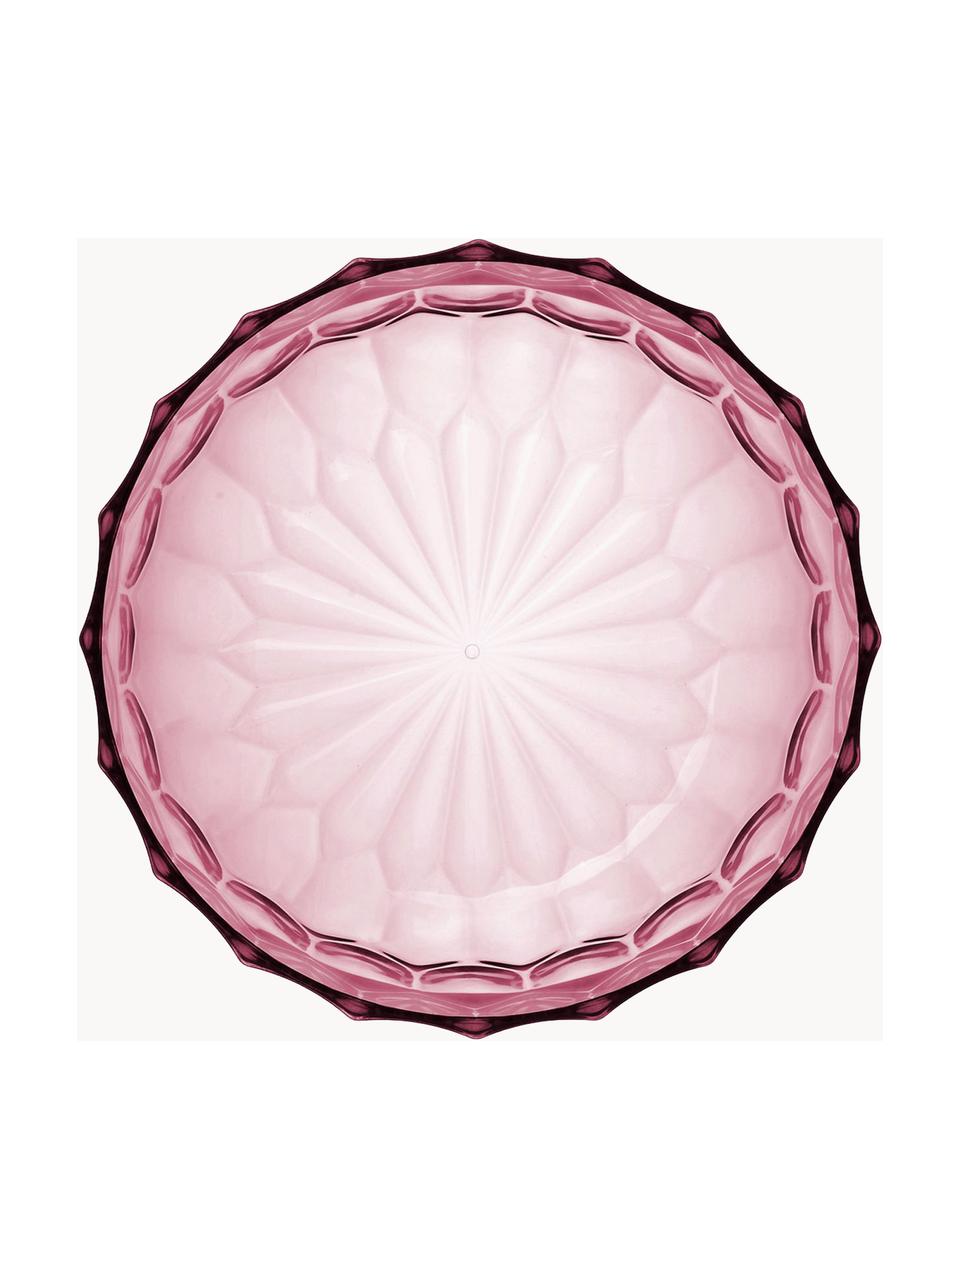 Salatschüssel Jellies mit Strukturmuster, Kunststoff, Rosa, Ø 32 x H 14 cm